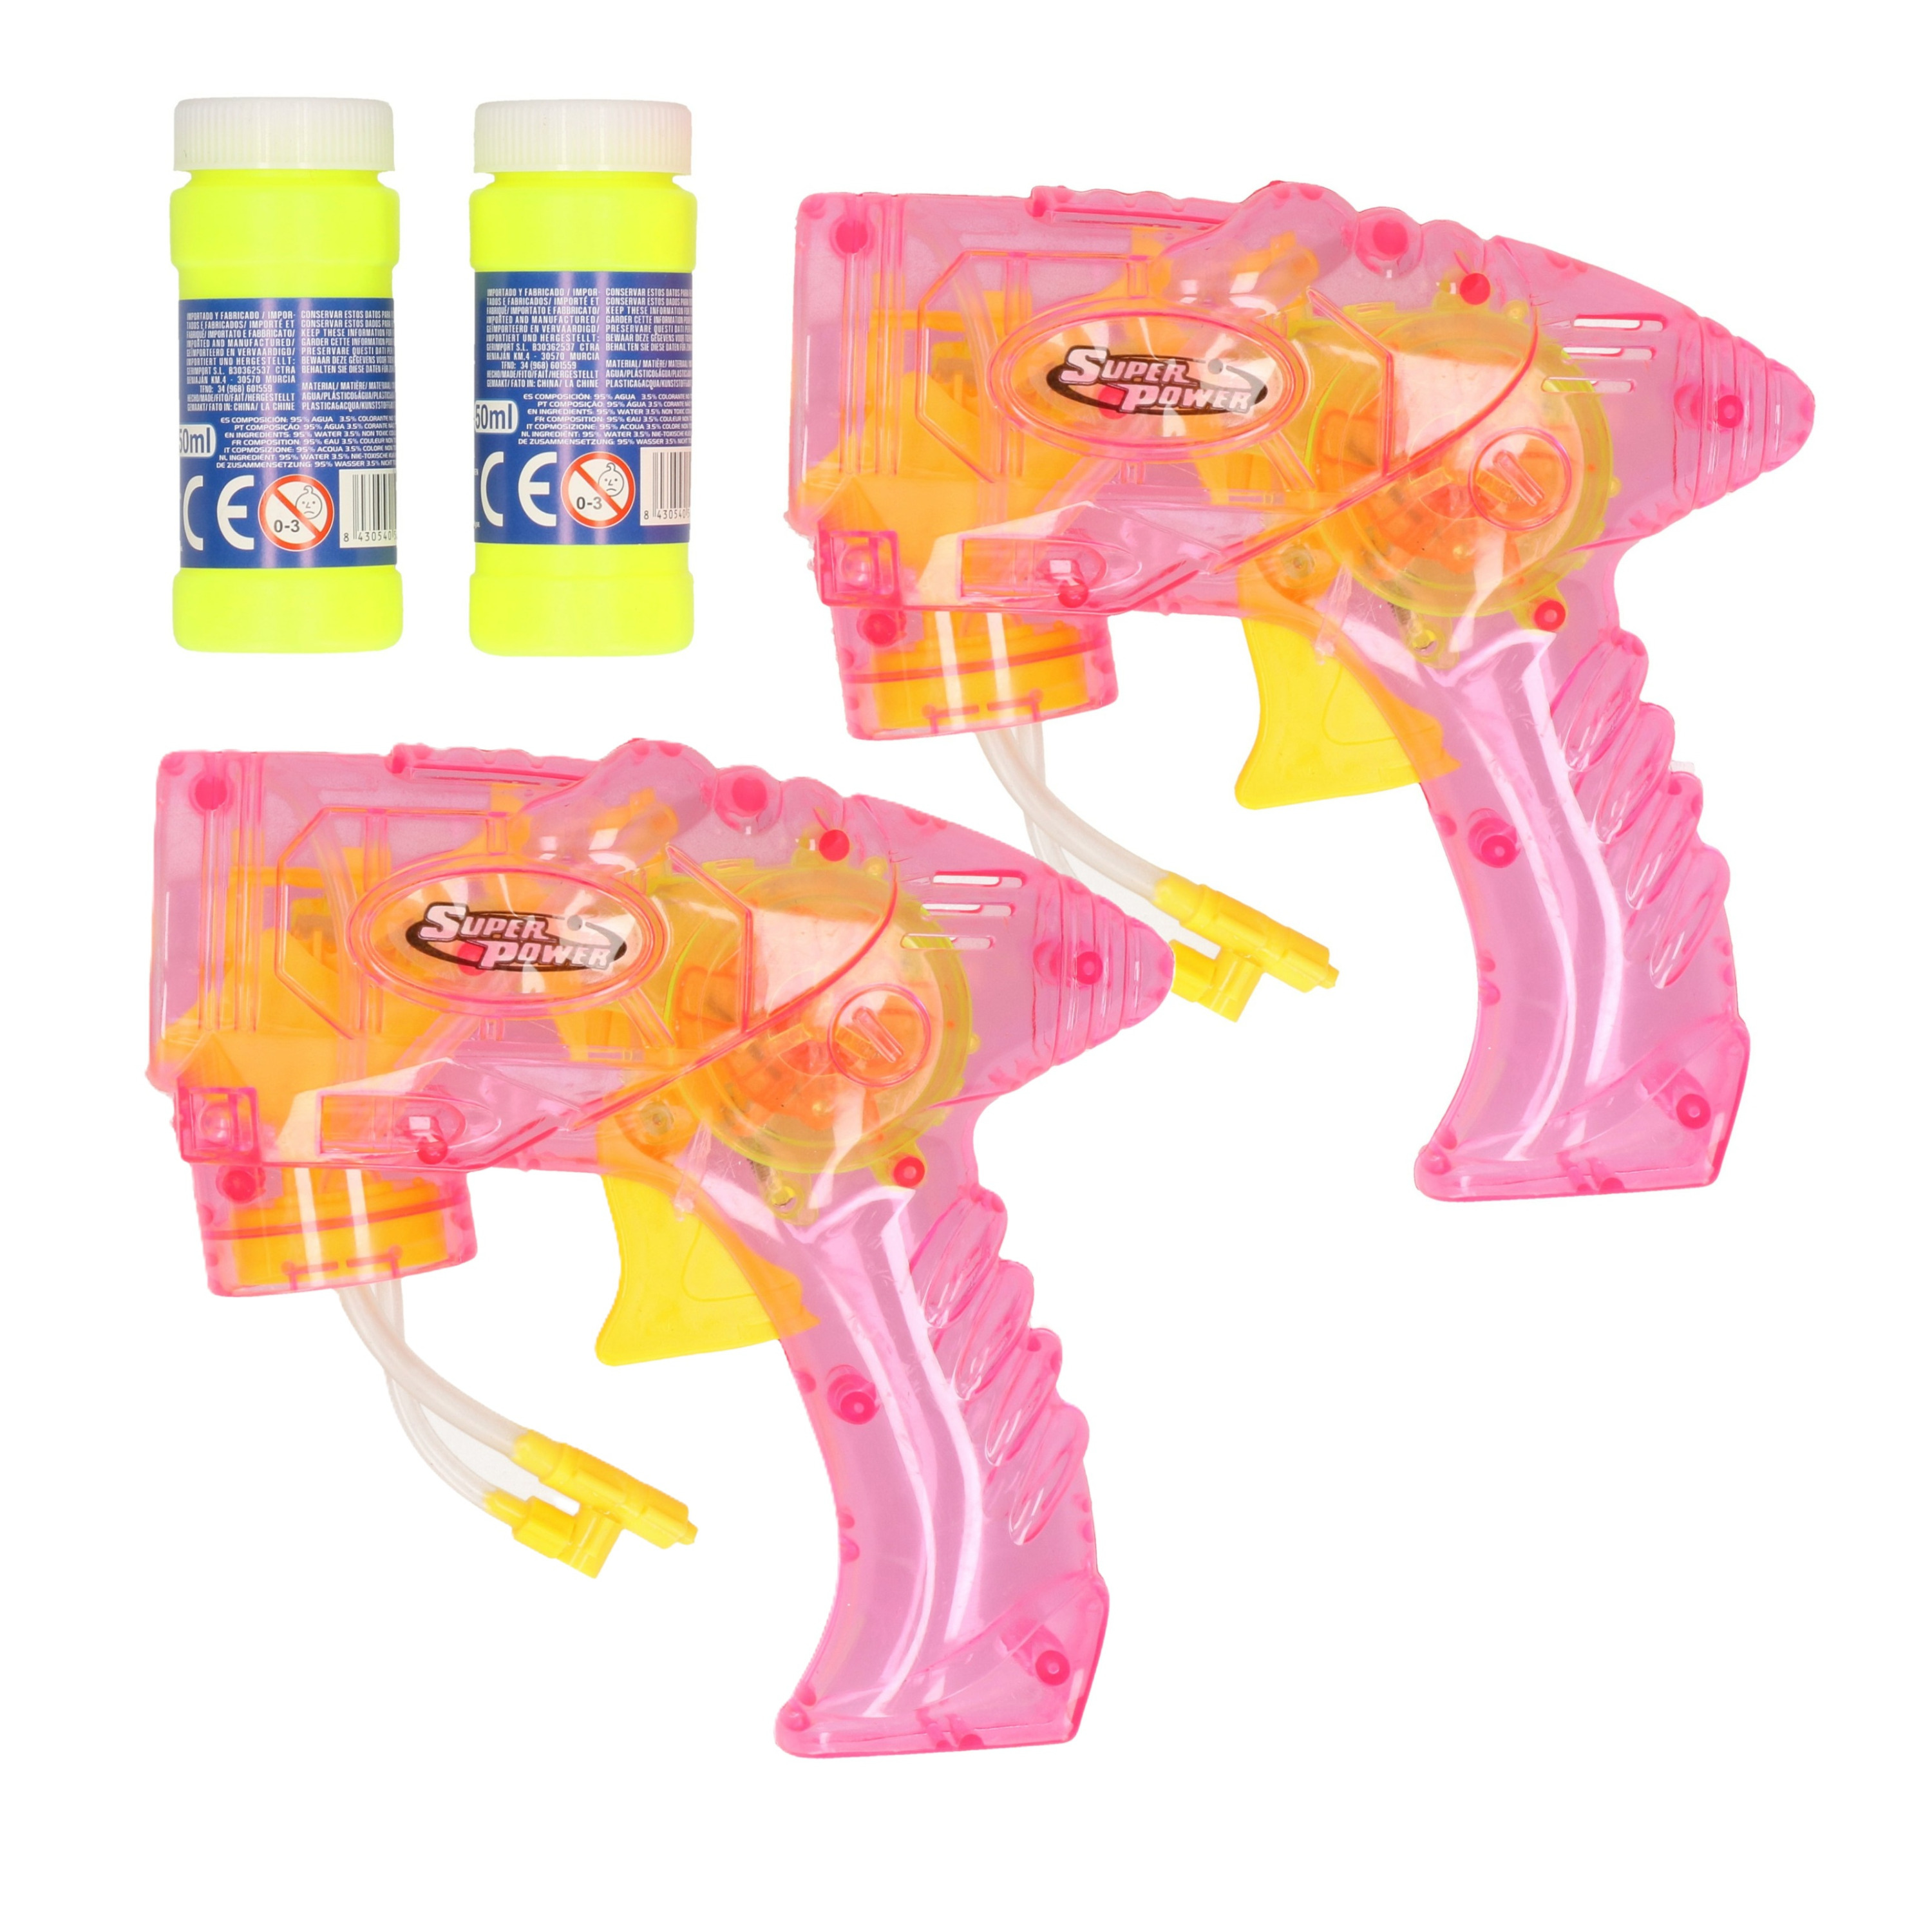 Bellenblaas speelgoed pistool - 2x - met vullingen - roze - 15 cm - plastic - bellen blazen -